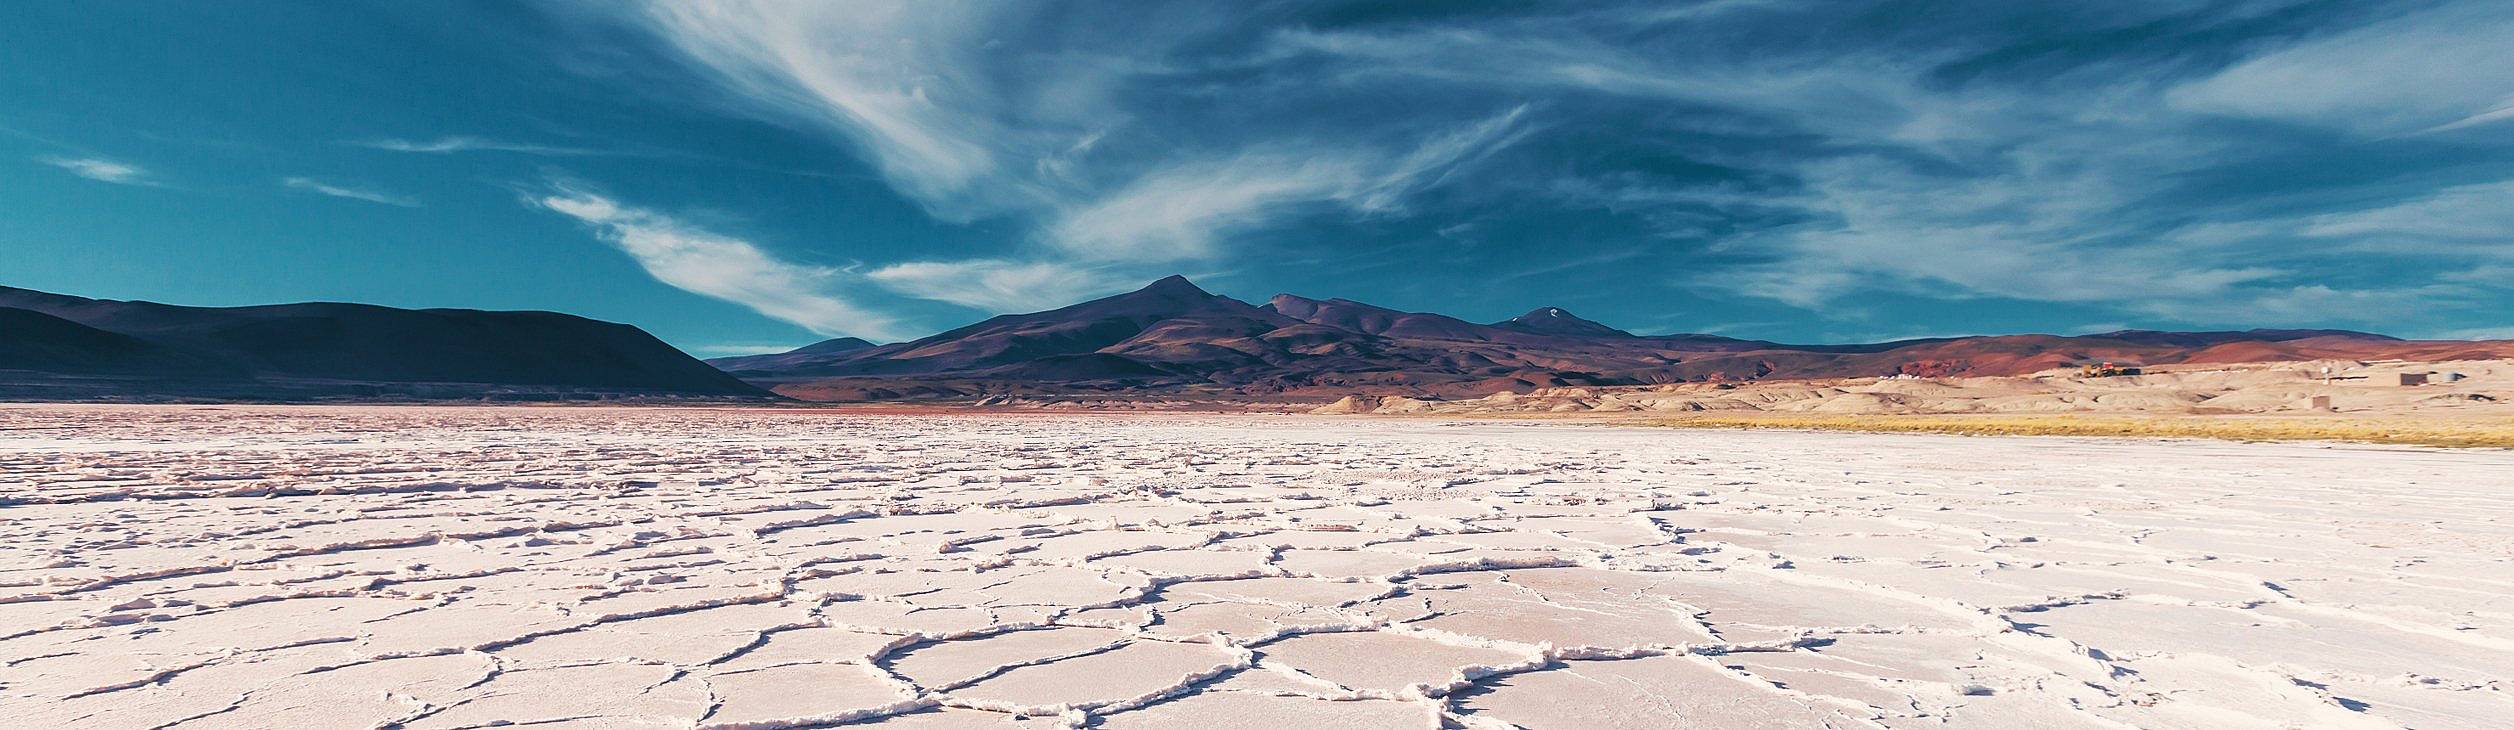 Wüstentour Argentinien - Individualreise buchen